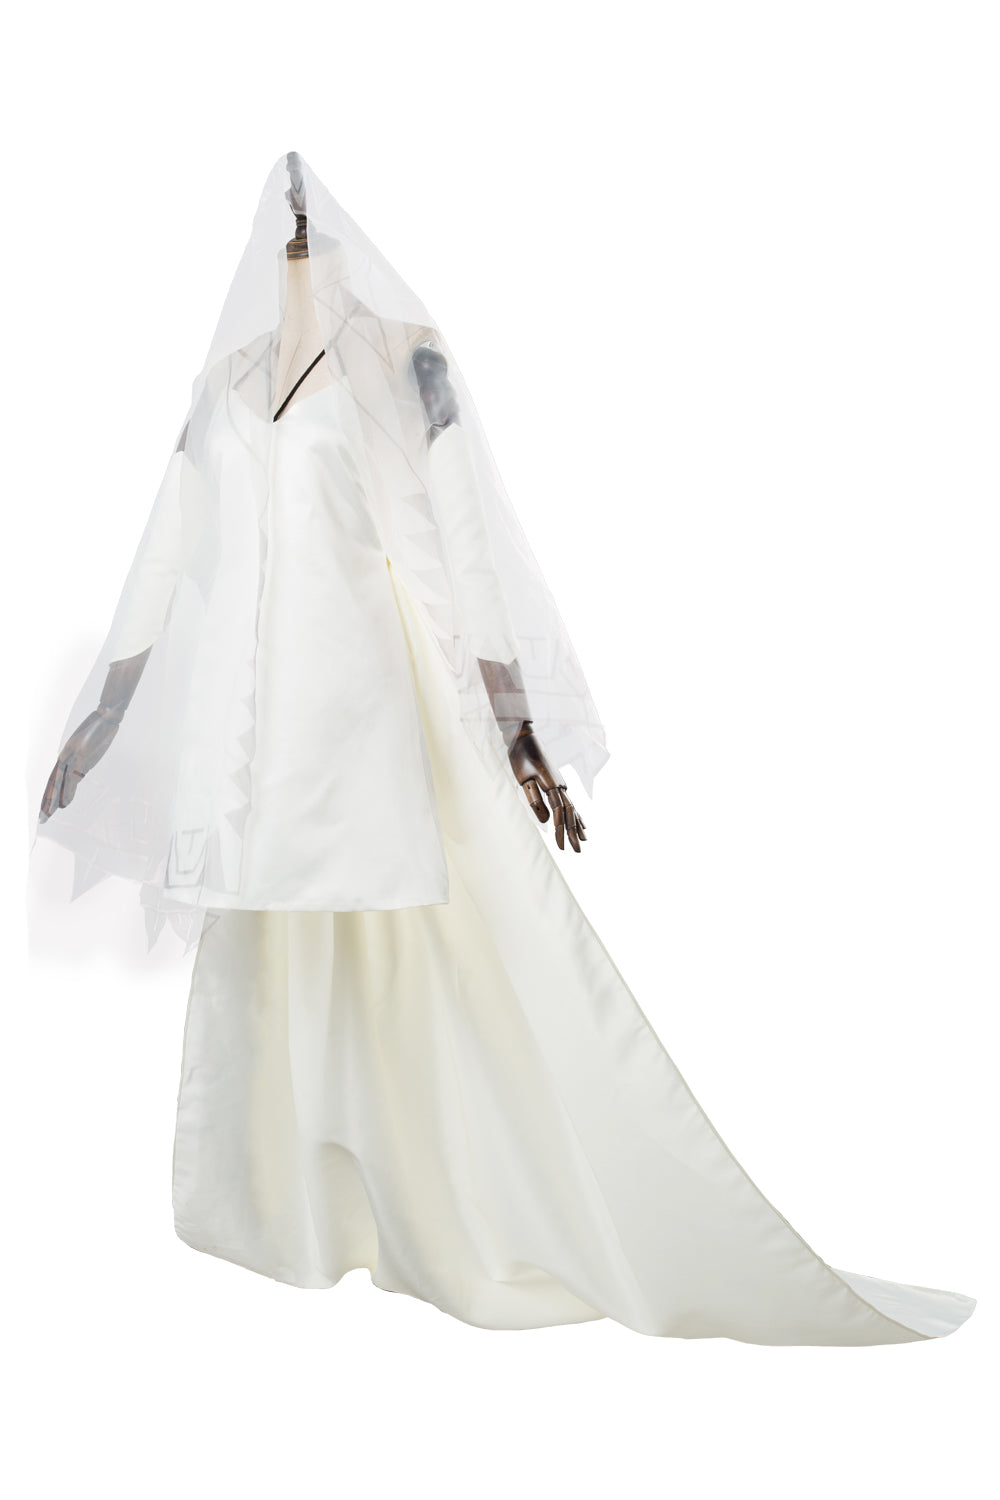 FGO Fate Grand Order Attila Robe Cosplay Costume